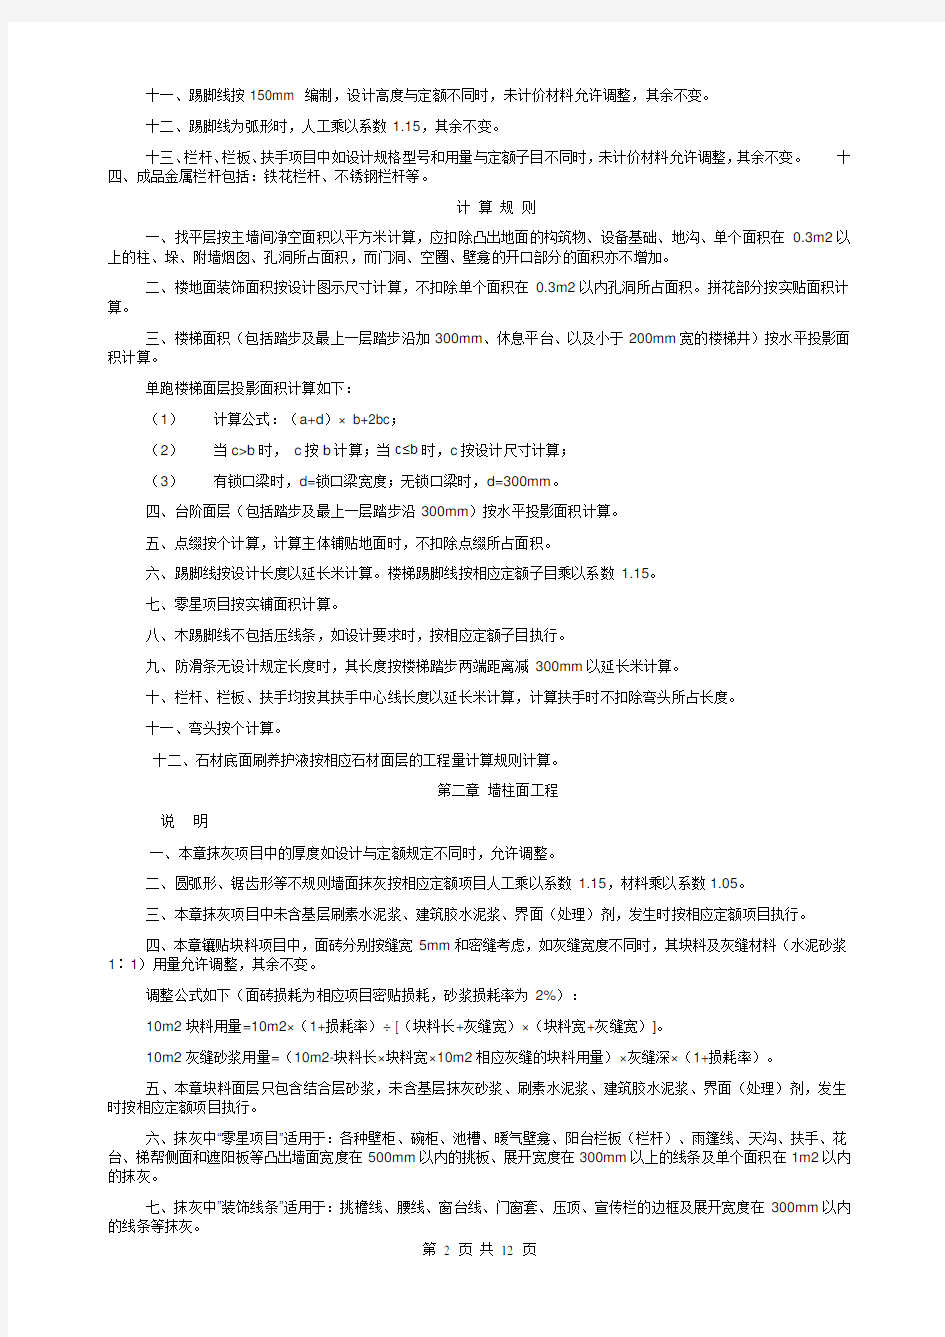 重庆市2008装饰工程定额说明和计算规则